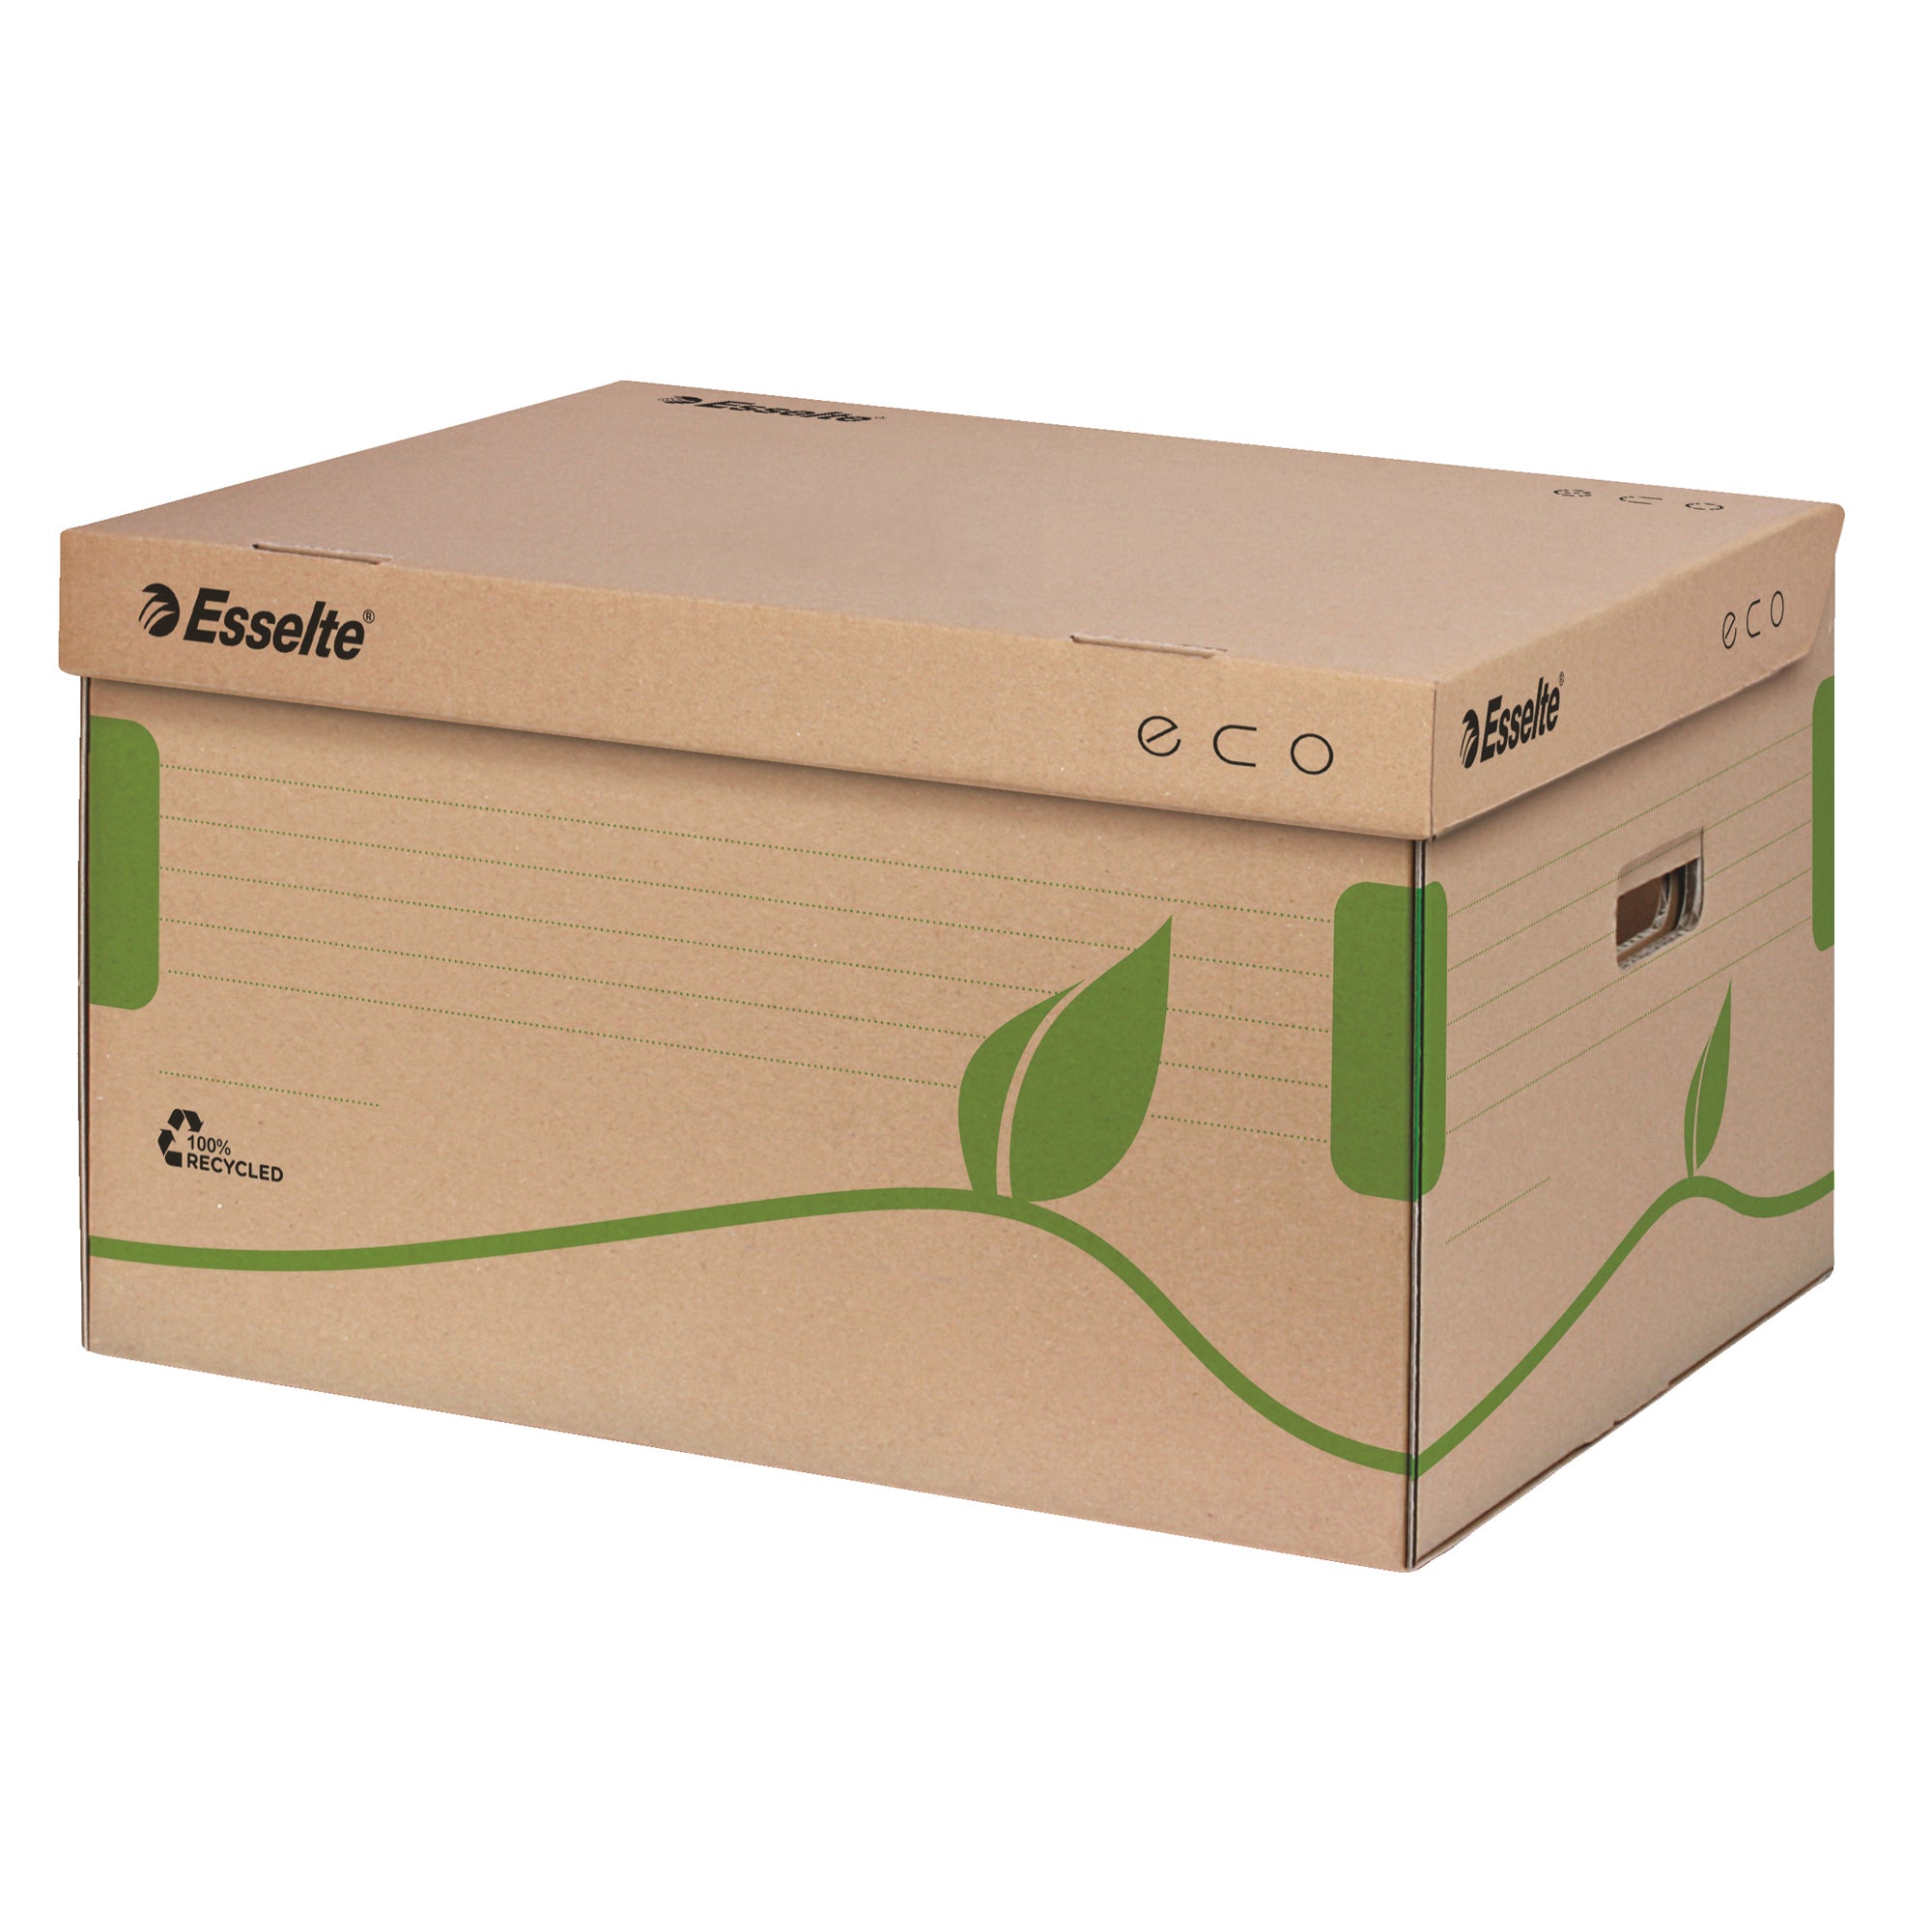 esselte-scatola-container-ecobox-345x439x242mm-apertura-superiore